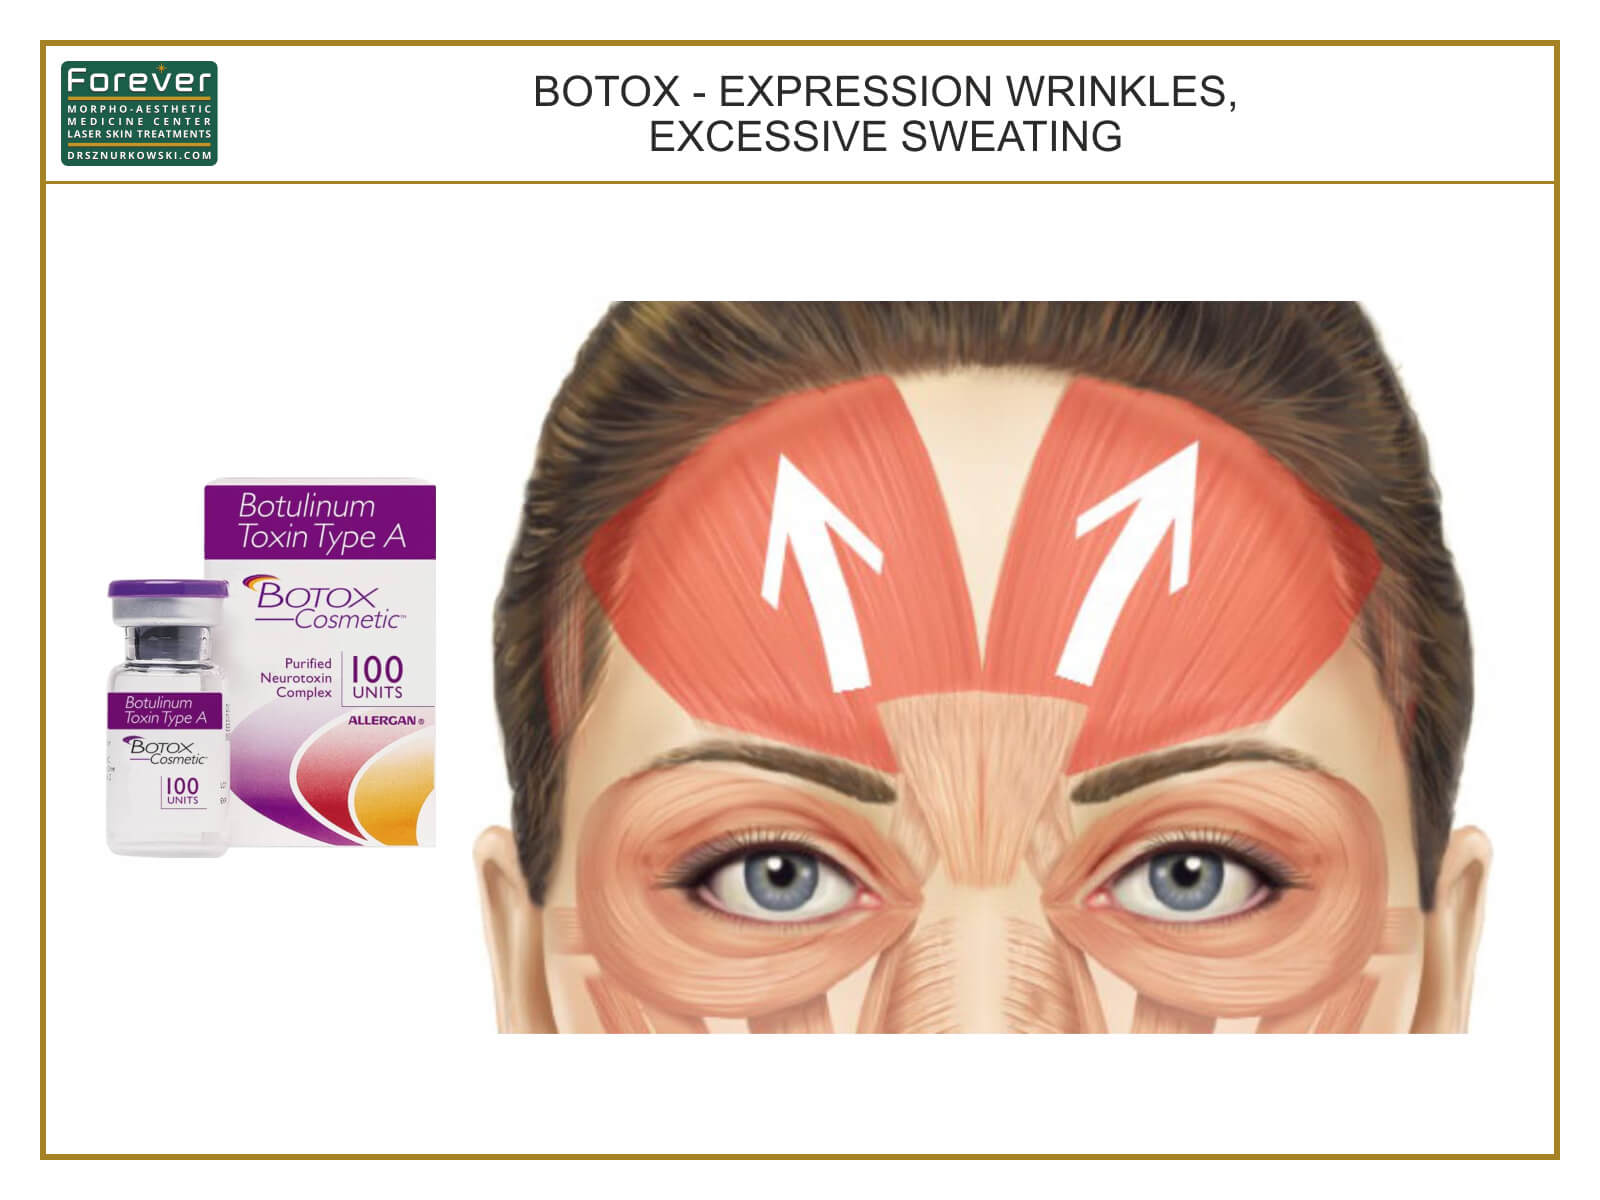 Botox - Expression Wrinkles, Excessive Sweating (80x60) EN.jpg